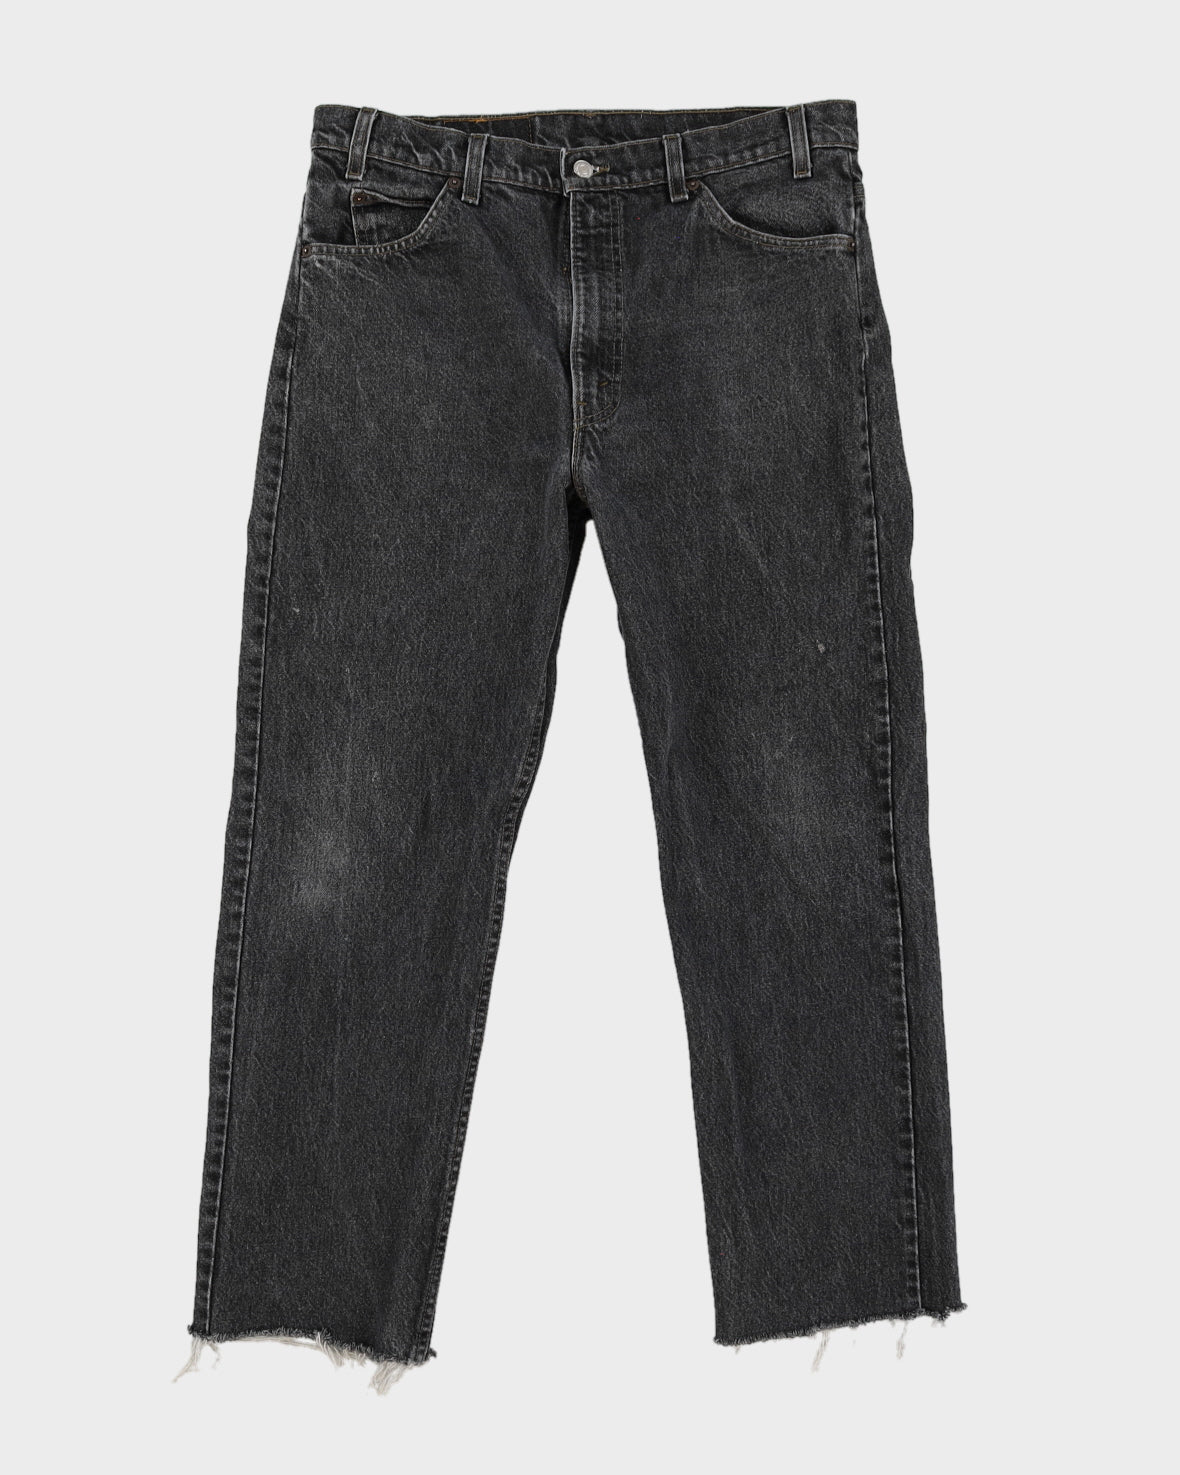 Vintage 80s Levi's Orange Tab Black Light Washed Jeans - W36 L28